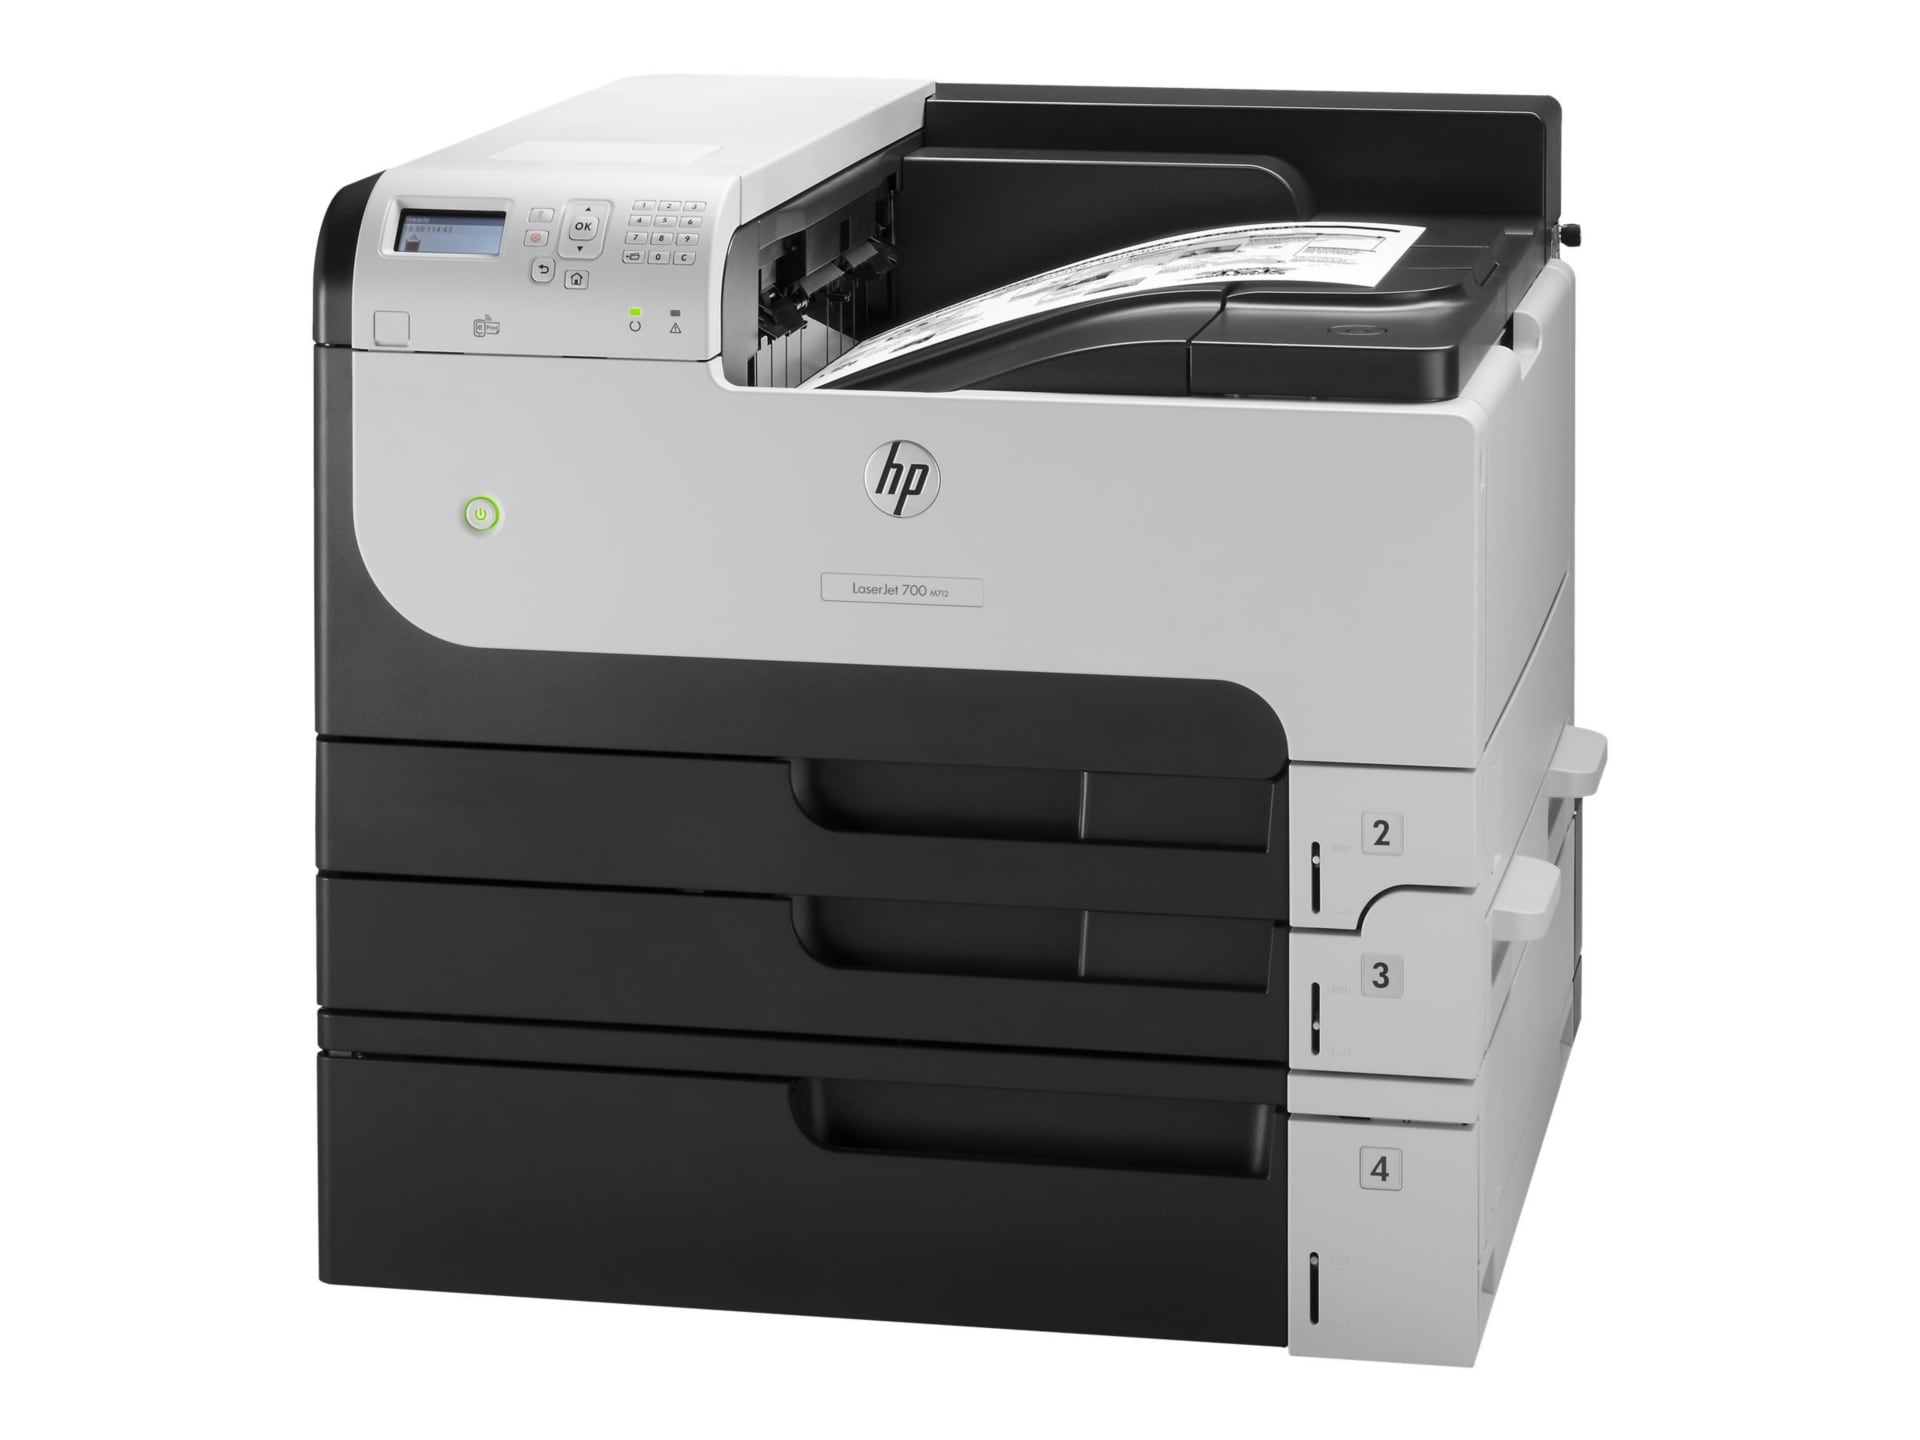 HP LaserJet Enterprise 700 Printer - printer - B/W - laser CF238A#BGJ - Laser Printers - CDW.com